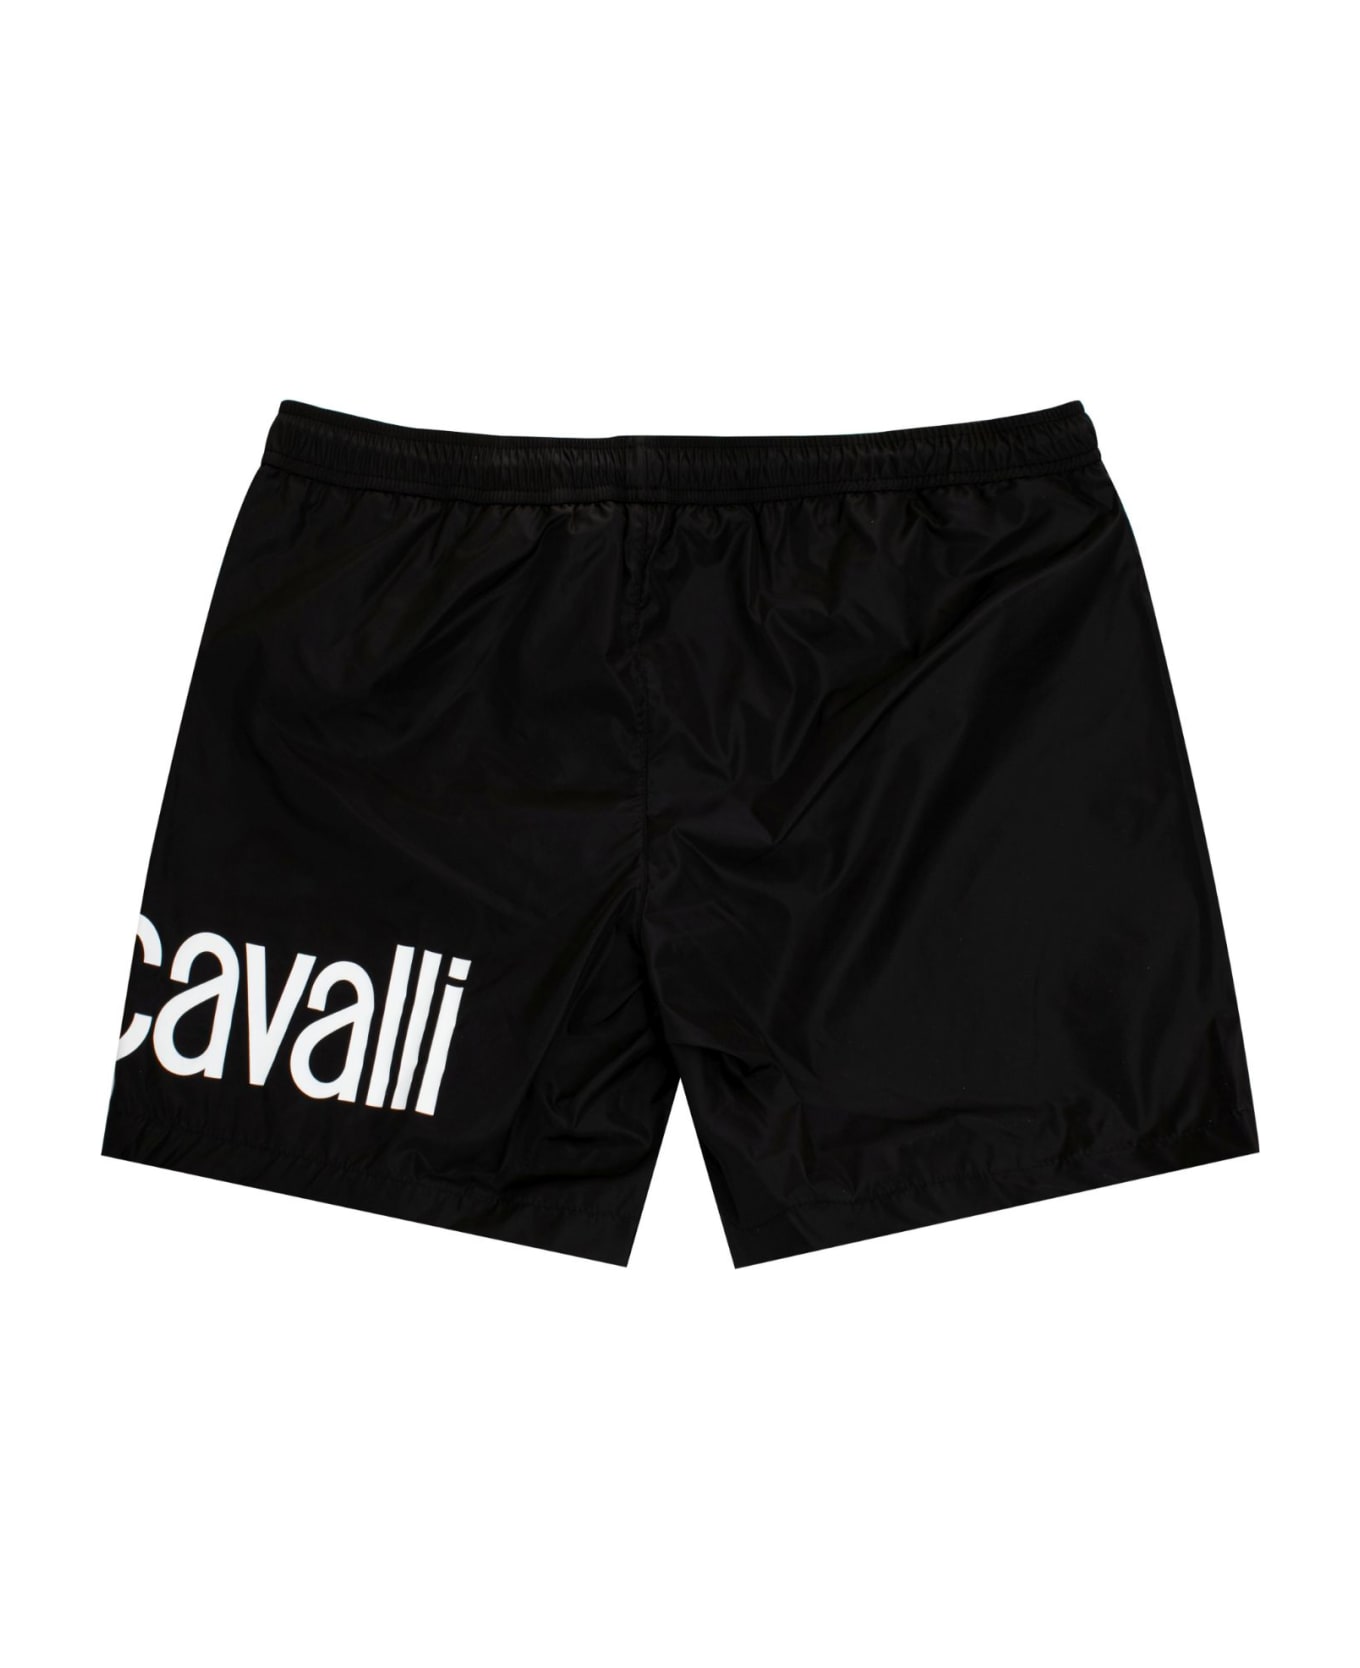 Just Cavalli Beachwear - Black スイムトランクス